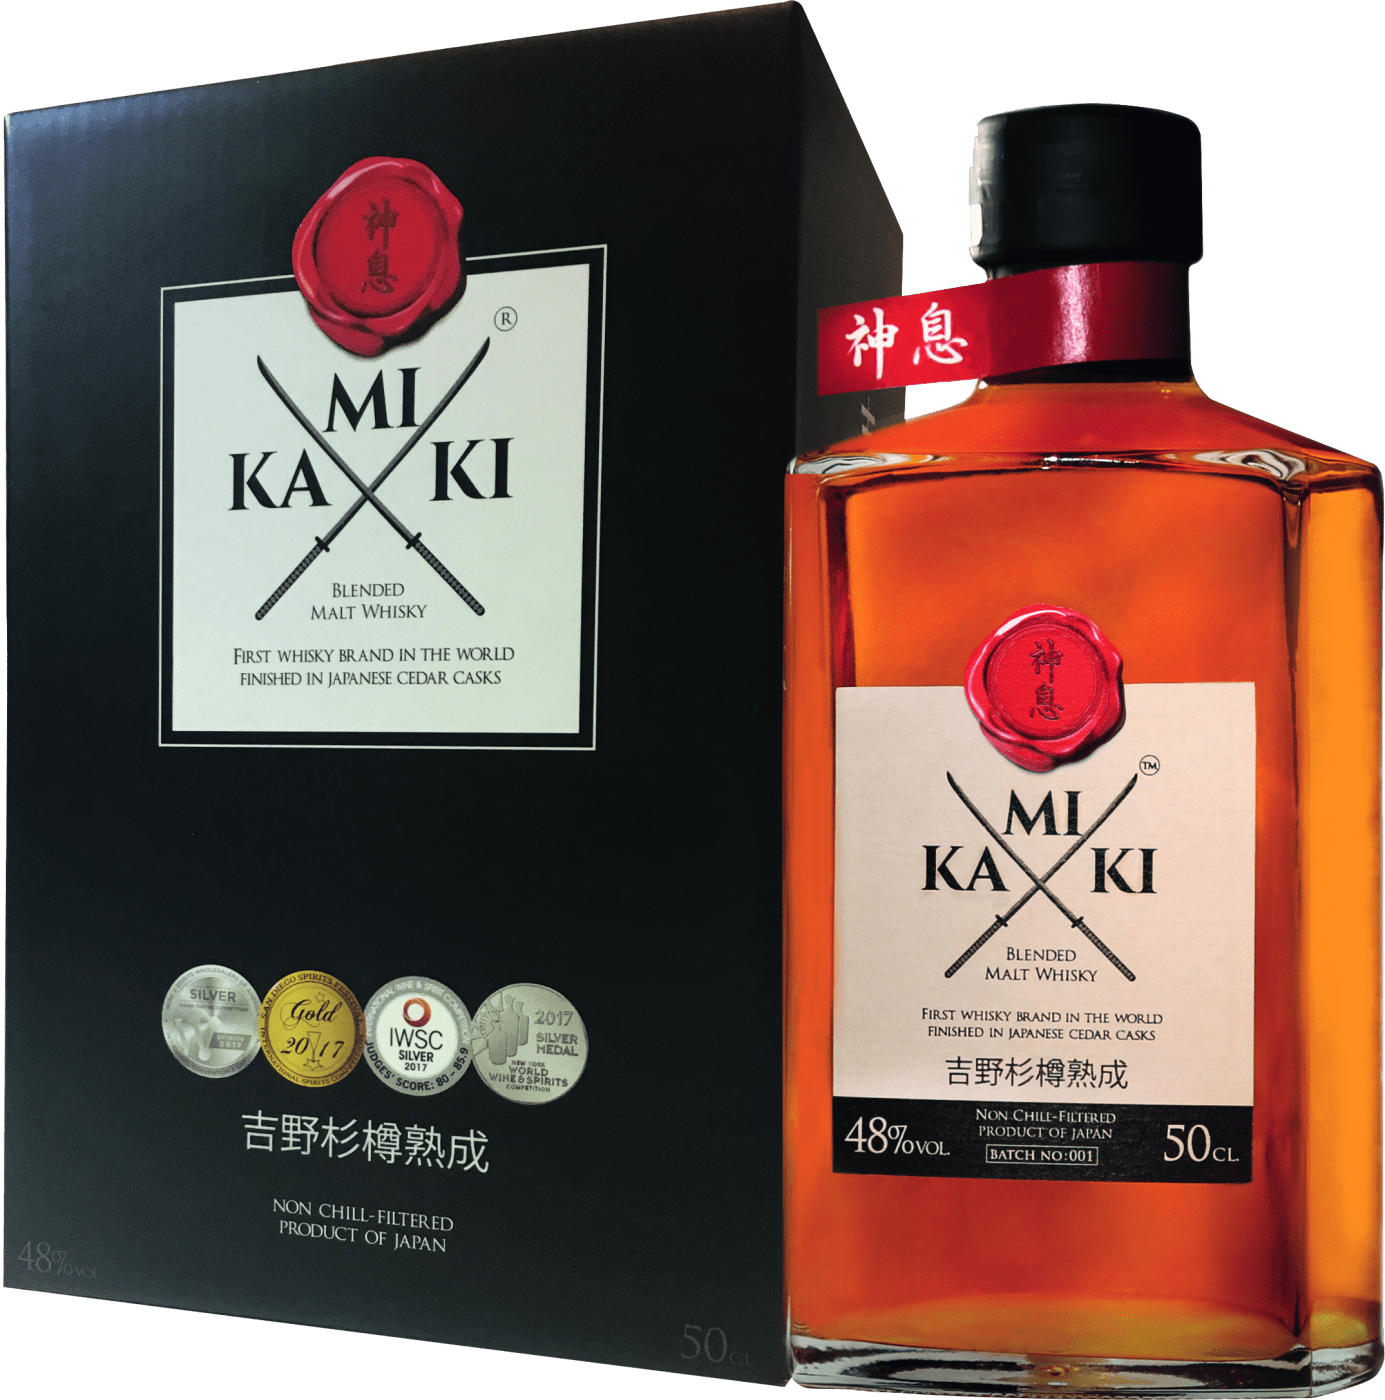 Kamiki Japanese Cedar Casks Blended Malt Whisky von Marke